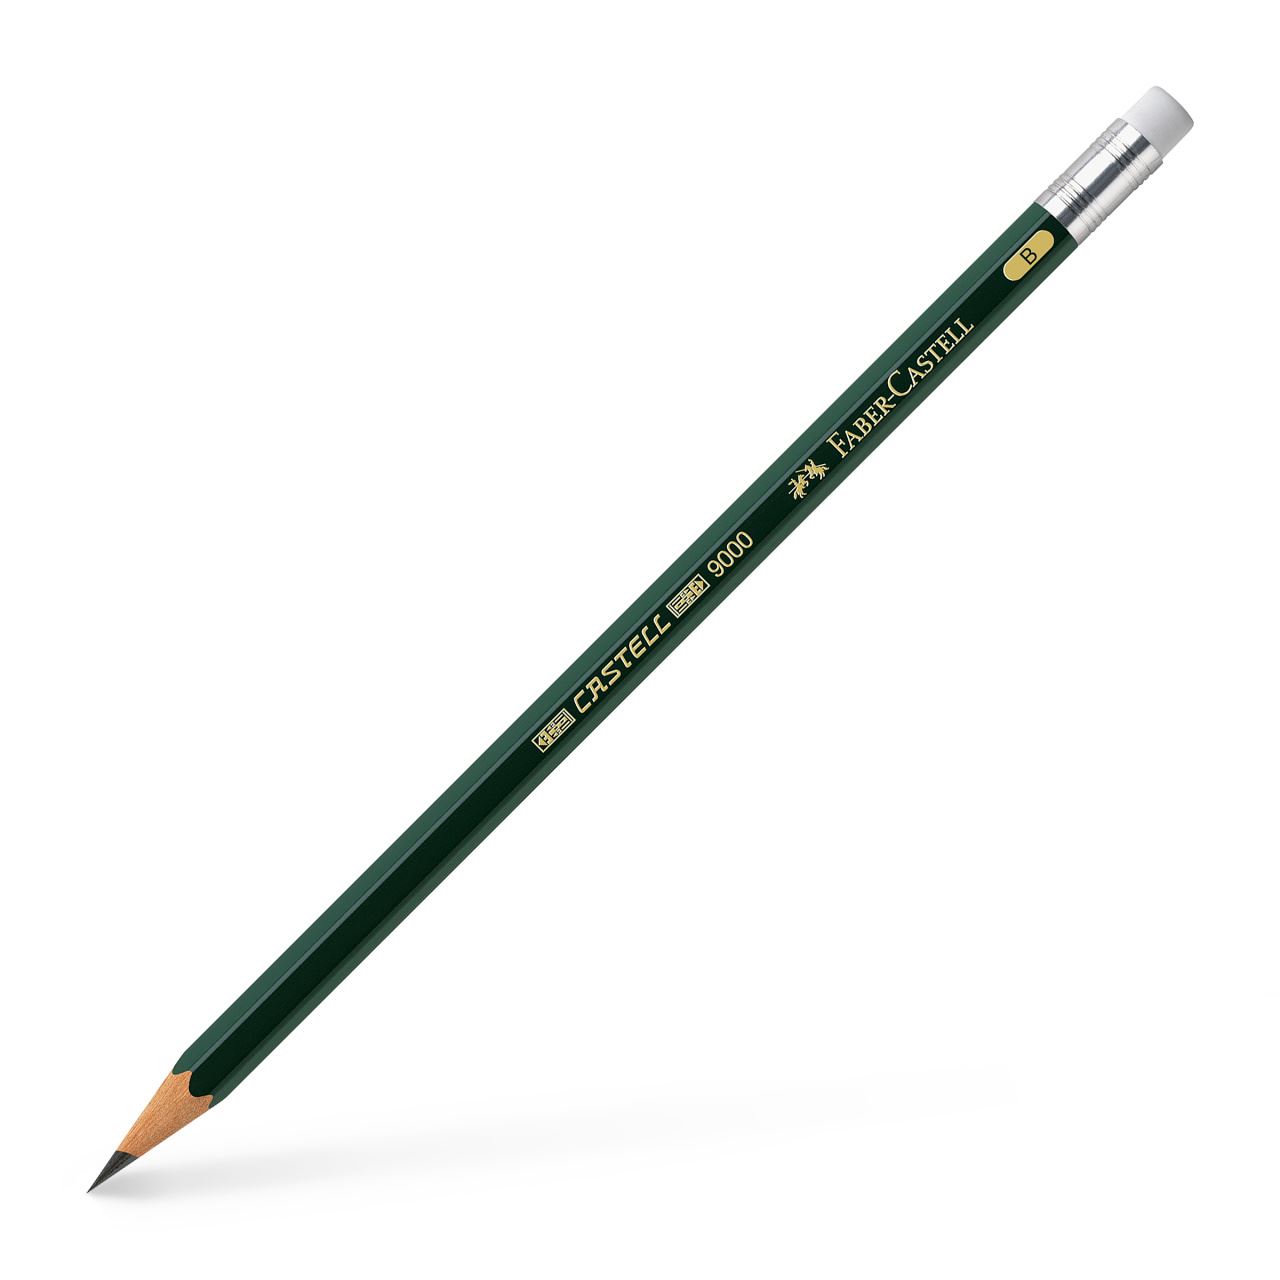 10 Bleistifte mit Radierer unlackiert und ohne Herstellerlogo HB Härtegrad 